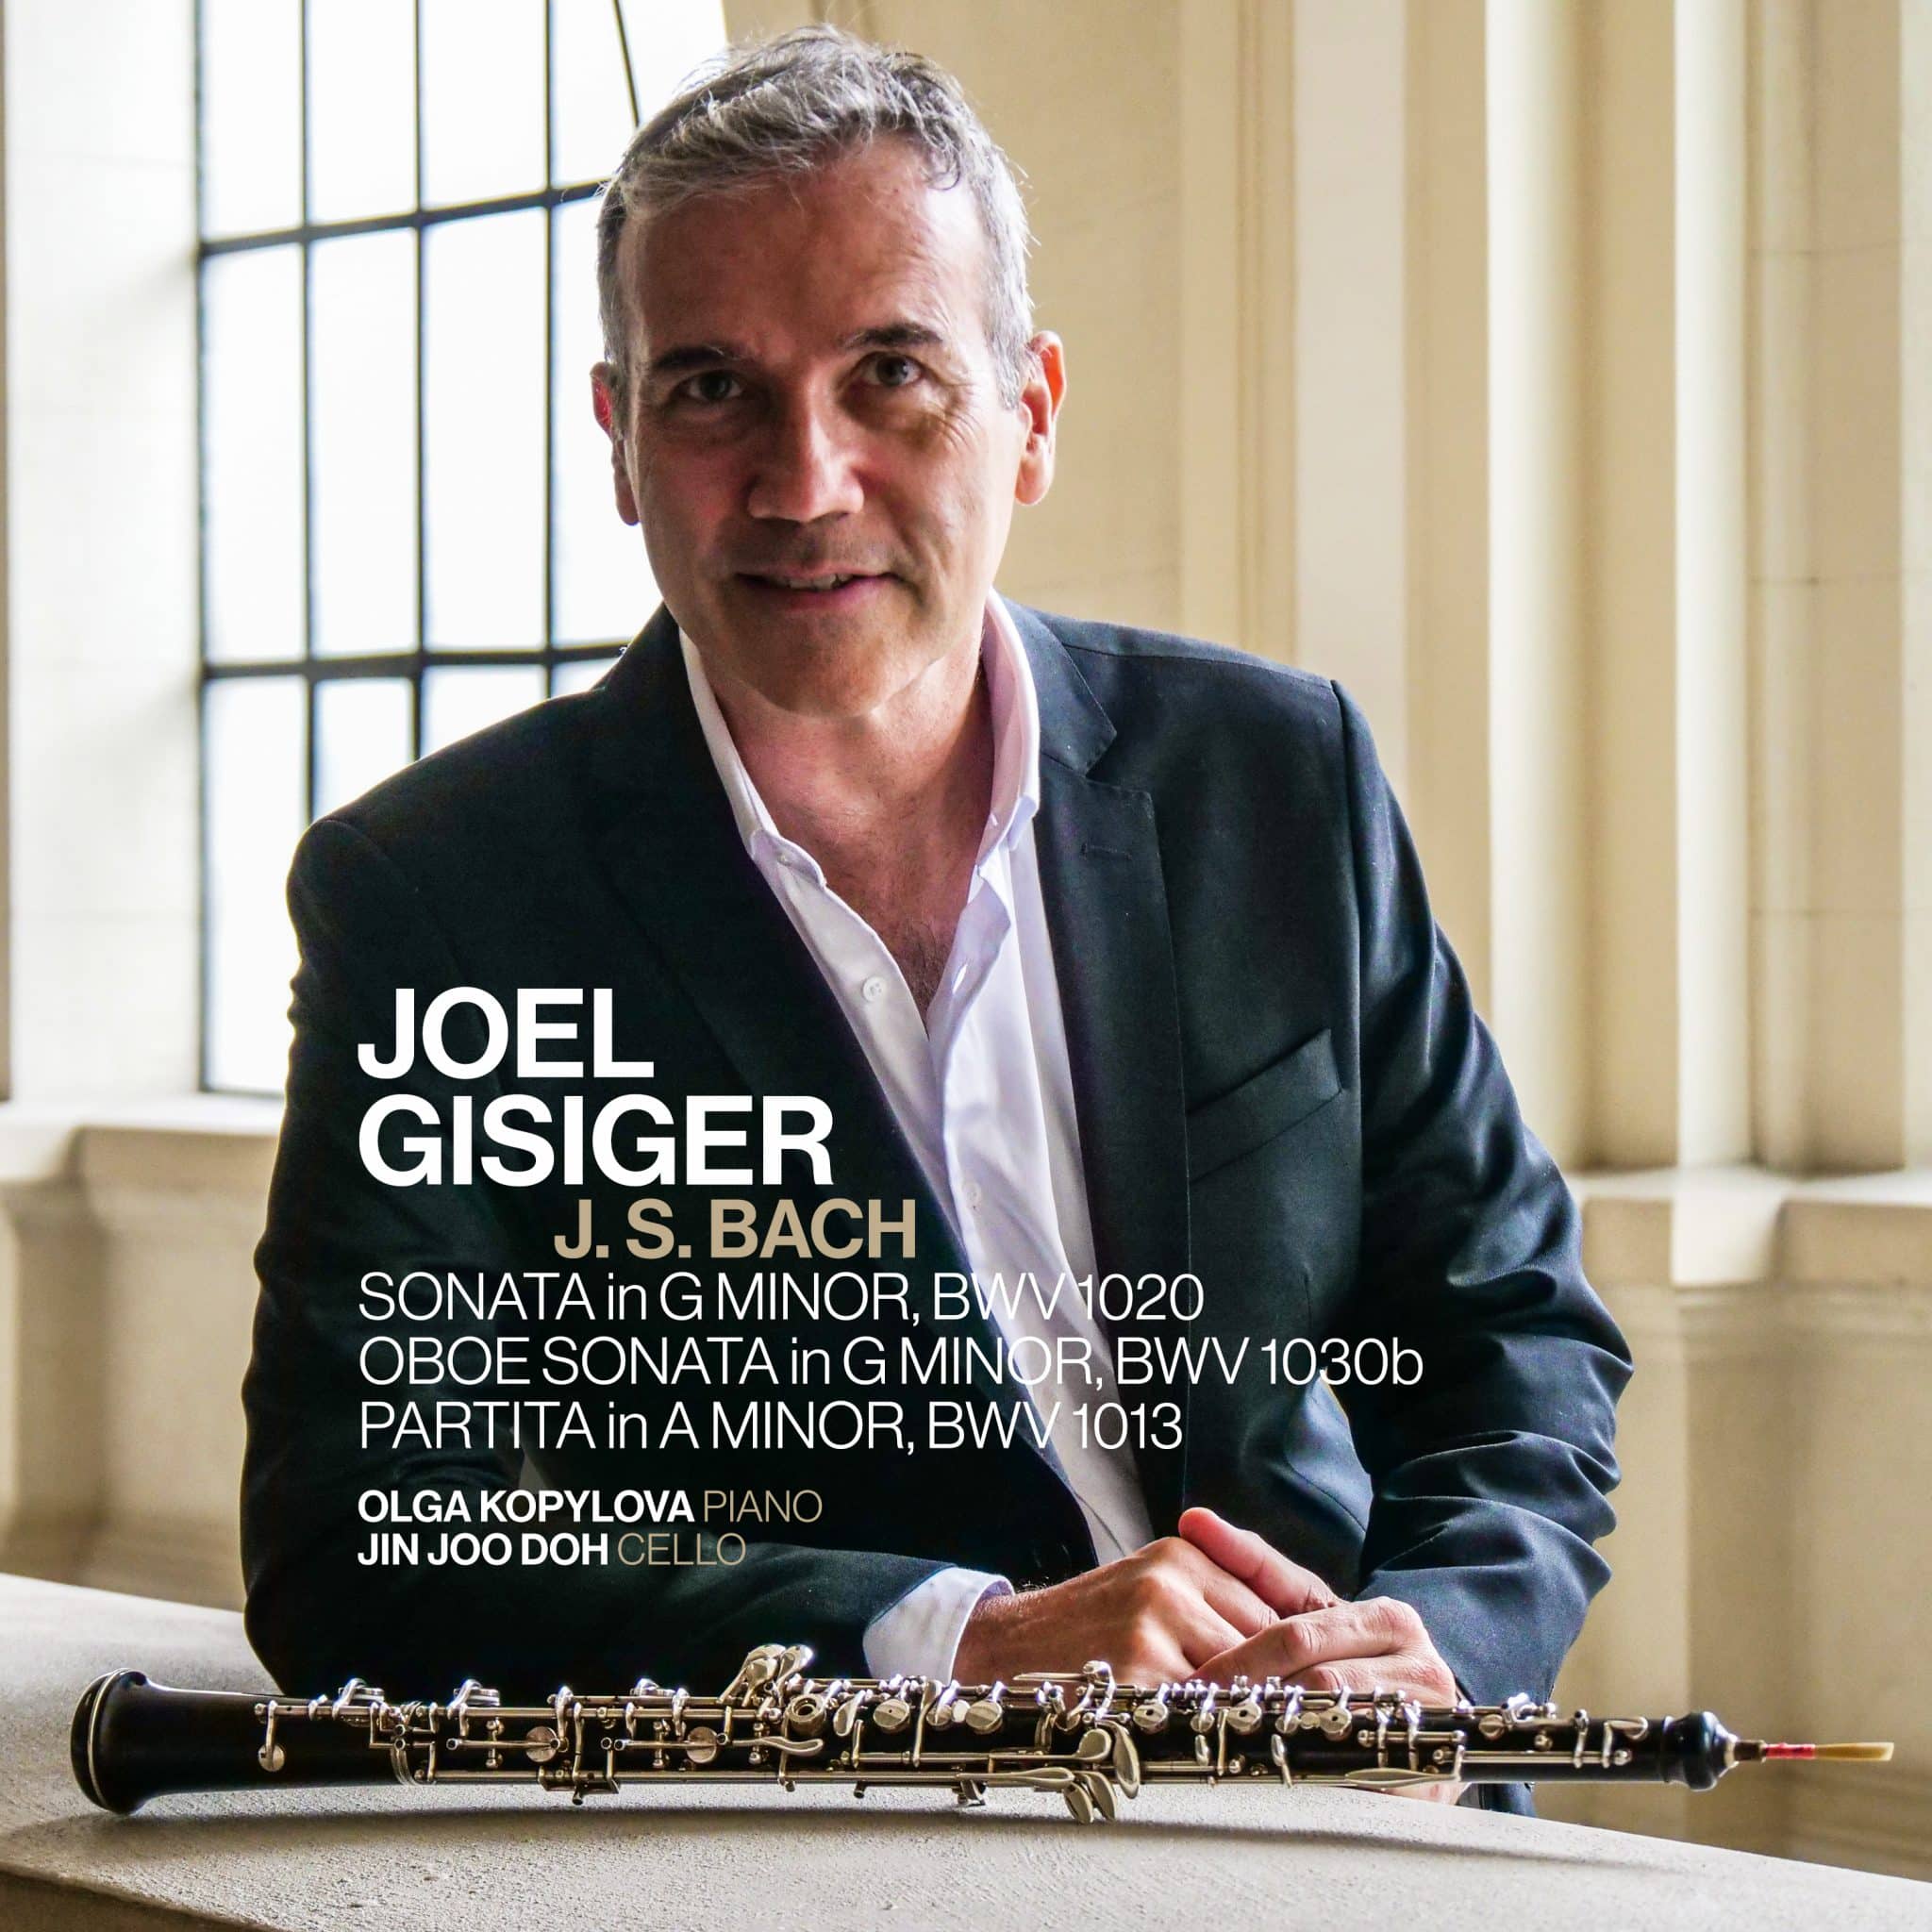 revistaprosaversoearte.com - O oboísta Joel Gisiger apresenta seu álbum de estreia dedicado a obras de J. S. Bach